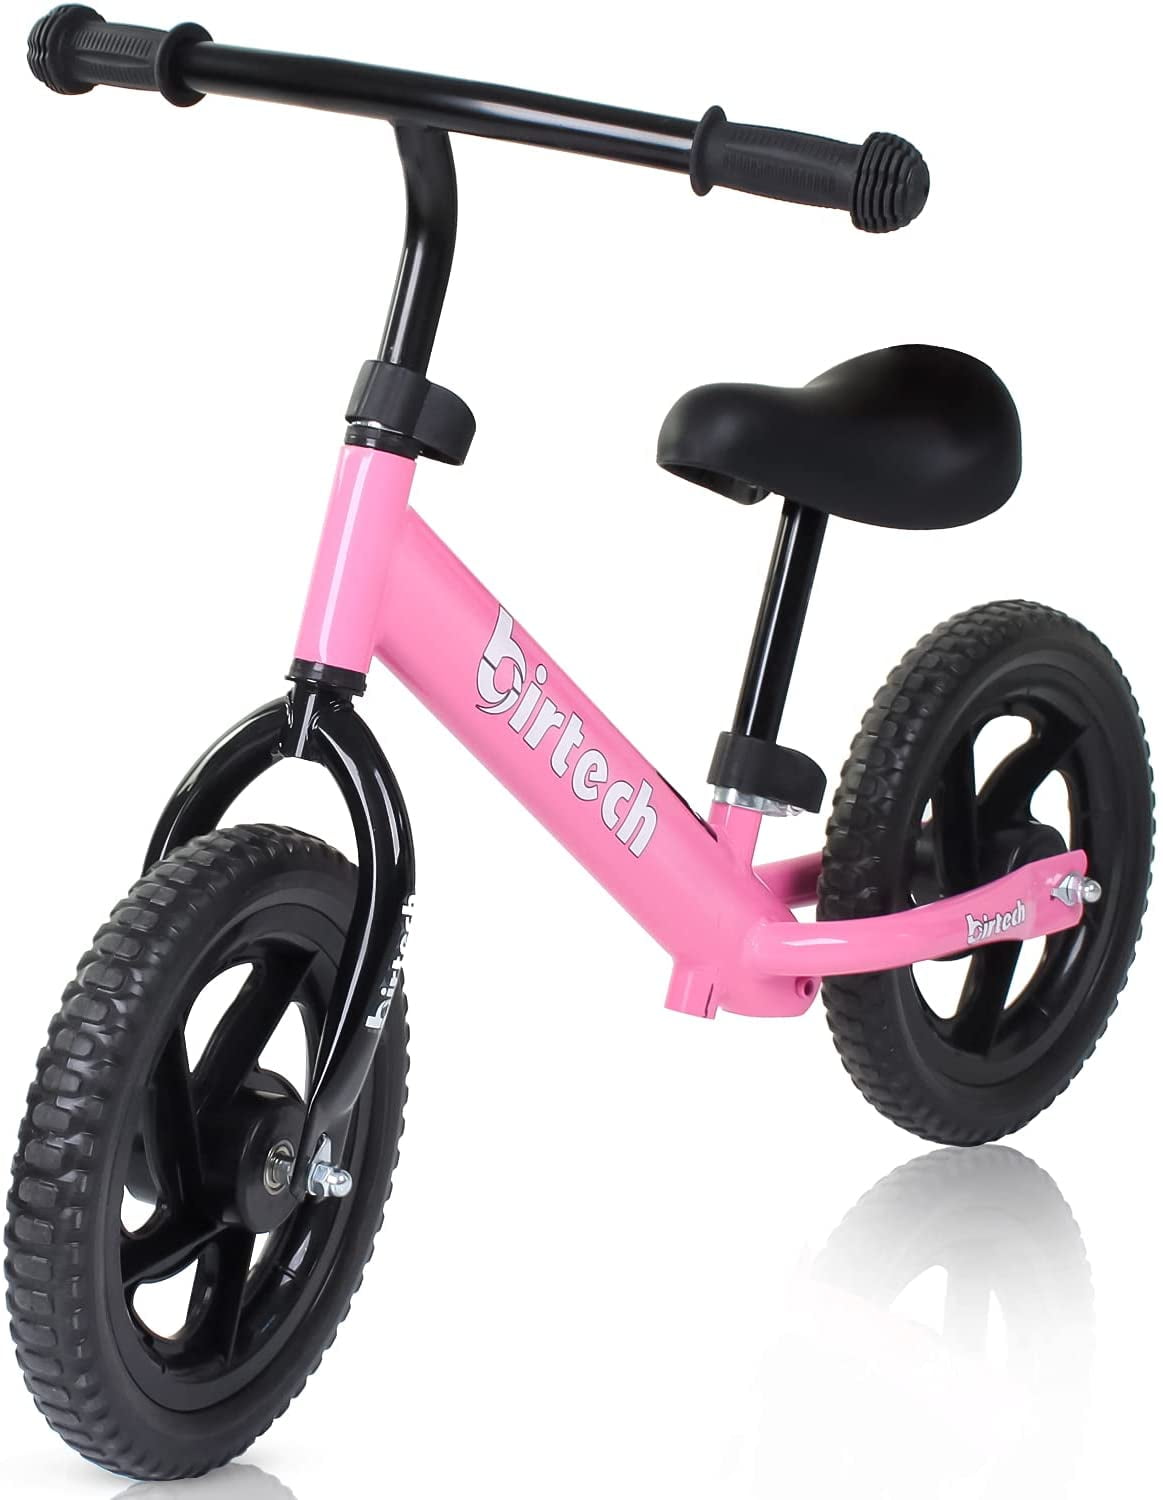 12'' Kids EVA Tyre Balance Bike No Pedal Toddler Ridgeyard Push Training Bicycle 